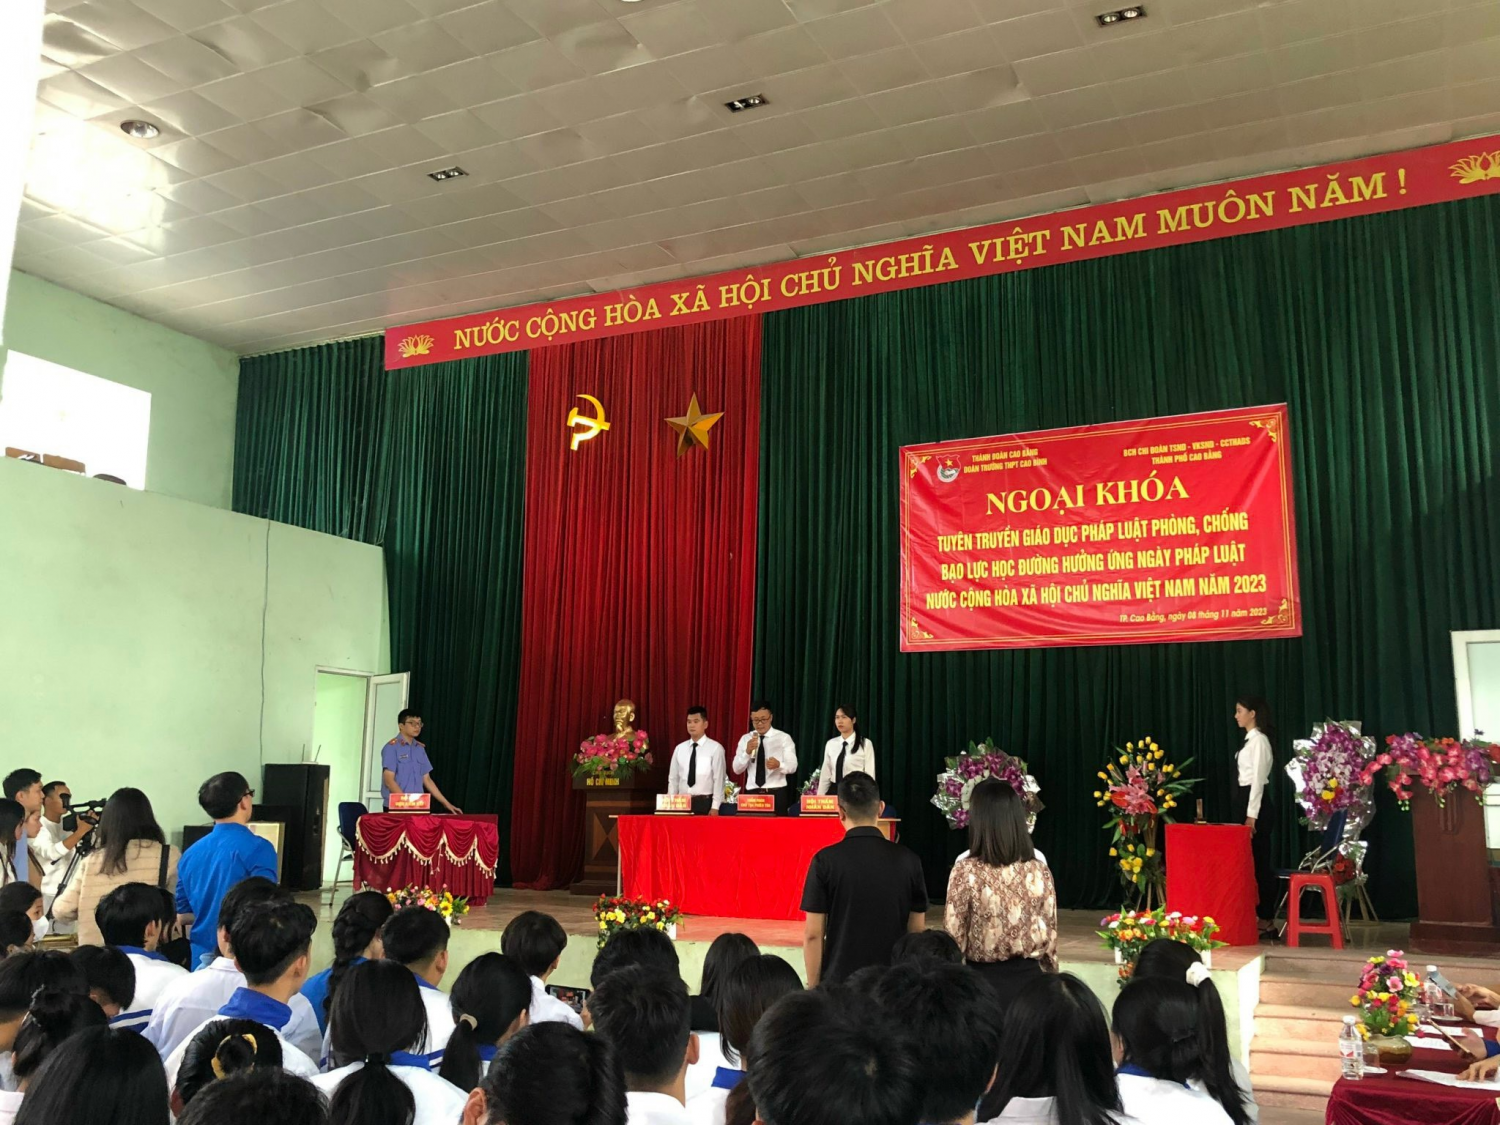 Ngoại khóa tuyên truyền giáo dục pháp luật phòng, chống bạo lực học đường hưởng ứng Ngày Pháp luật nước Cộng hòa xã hội chủ nghĩa Việt Nam.